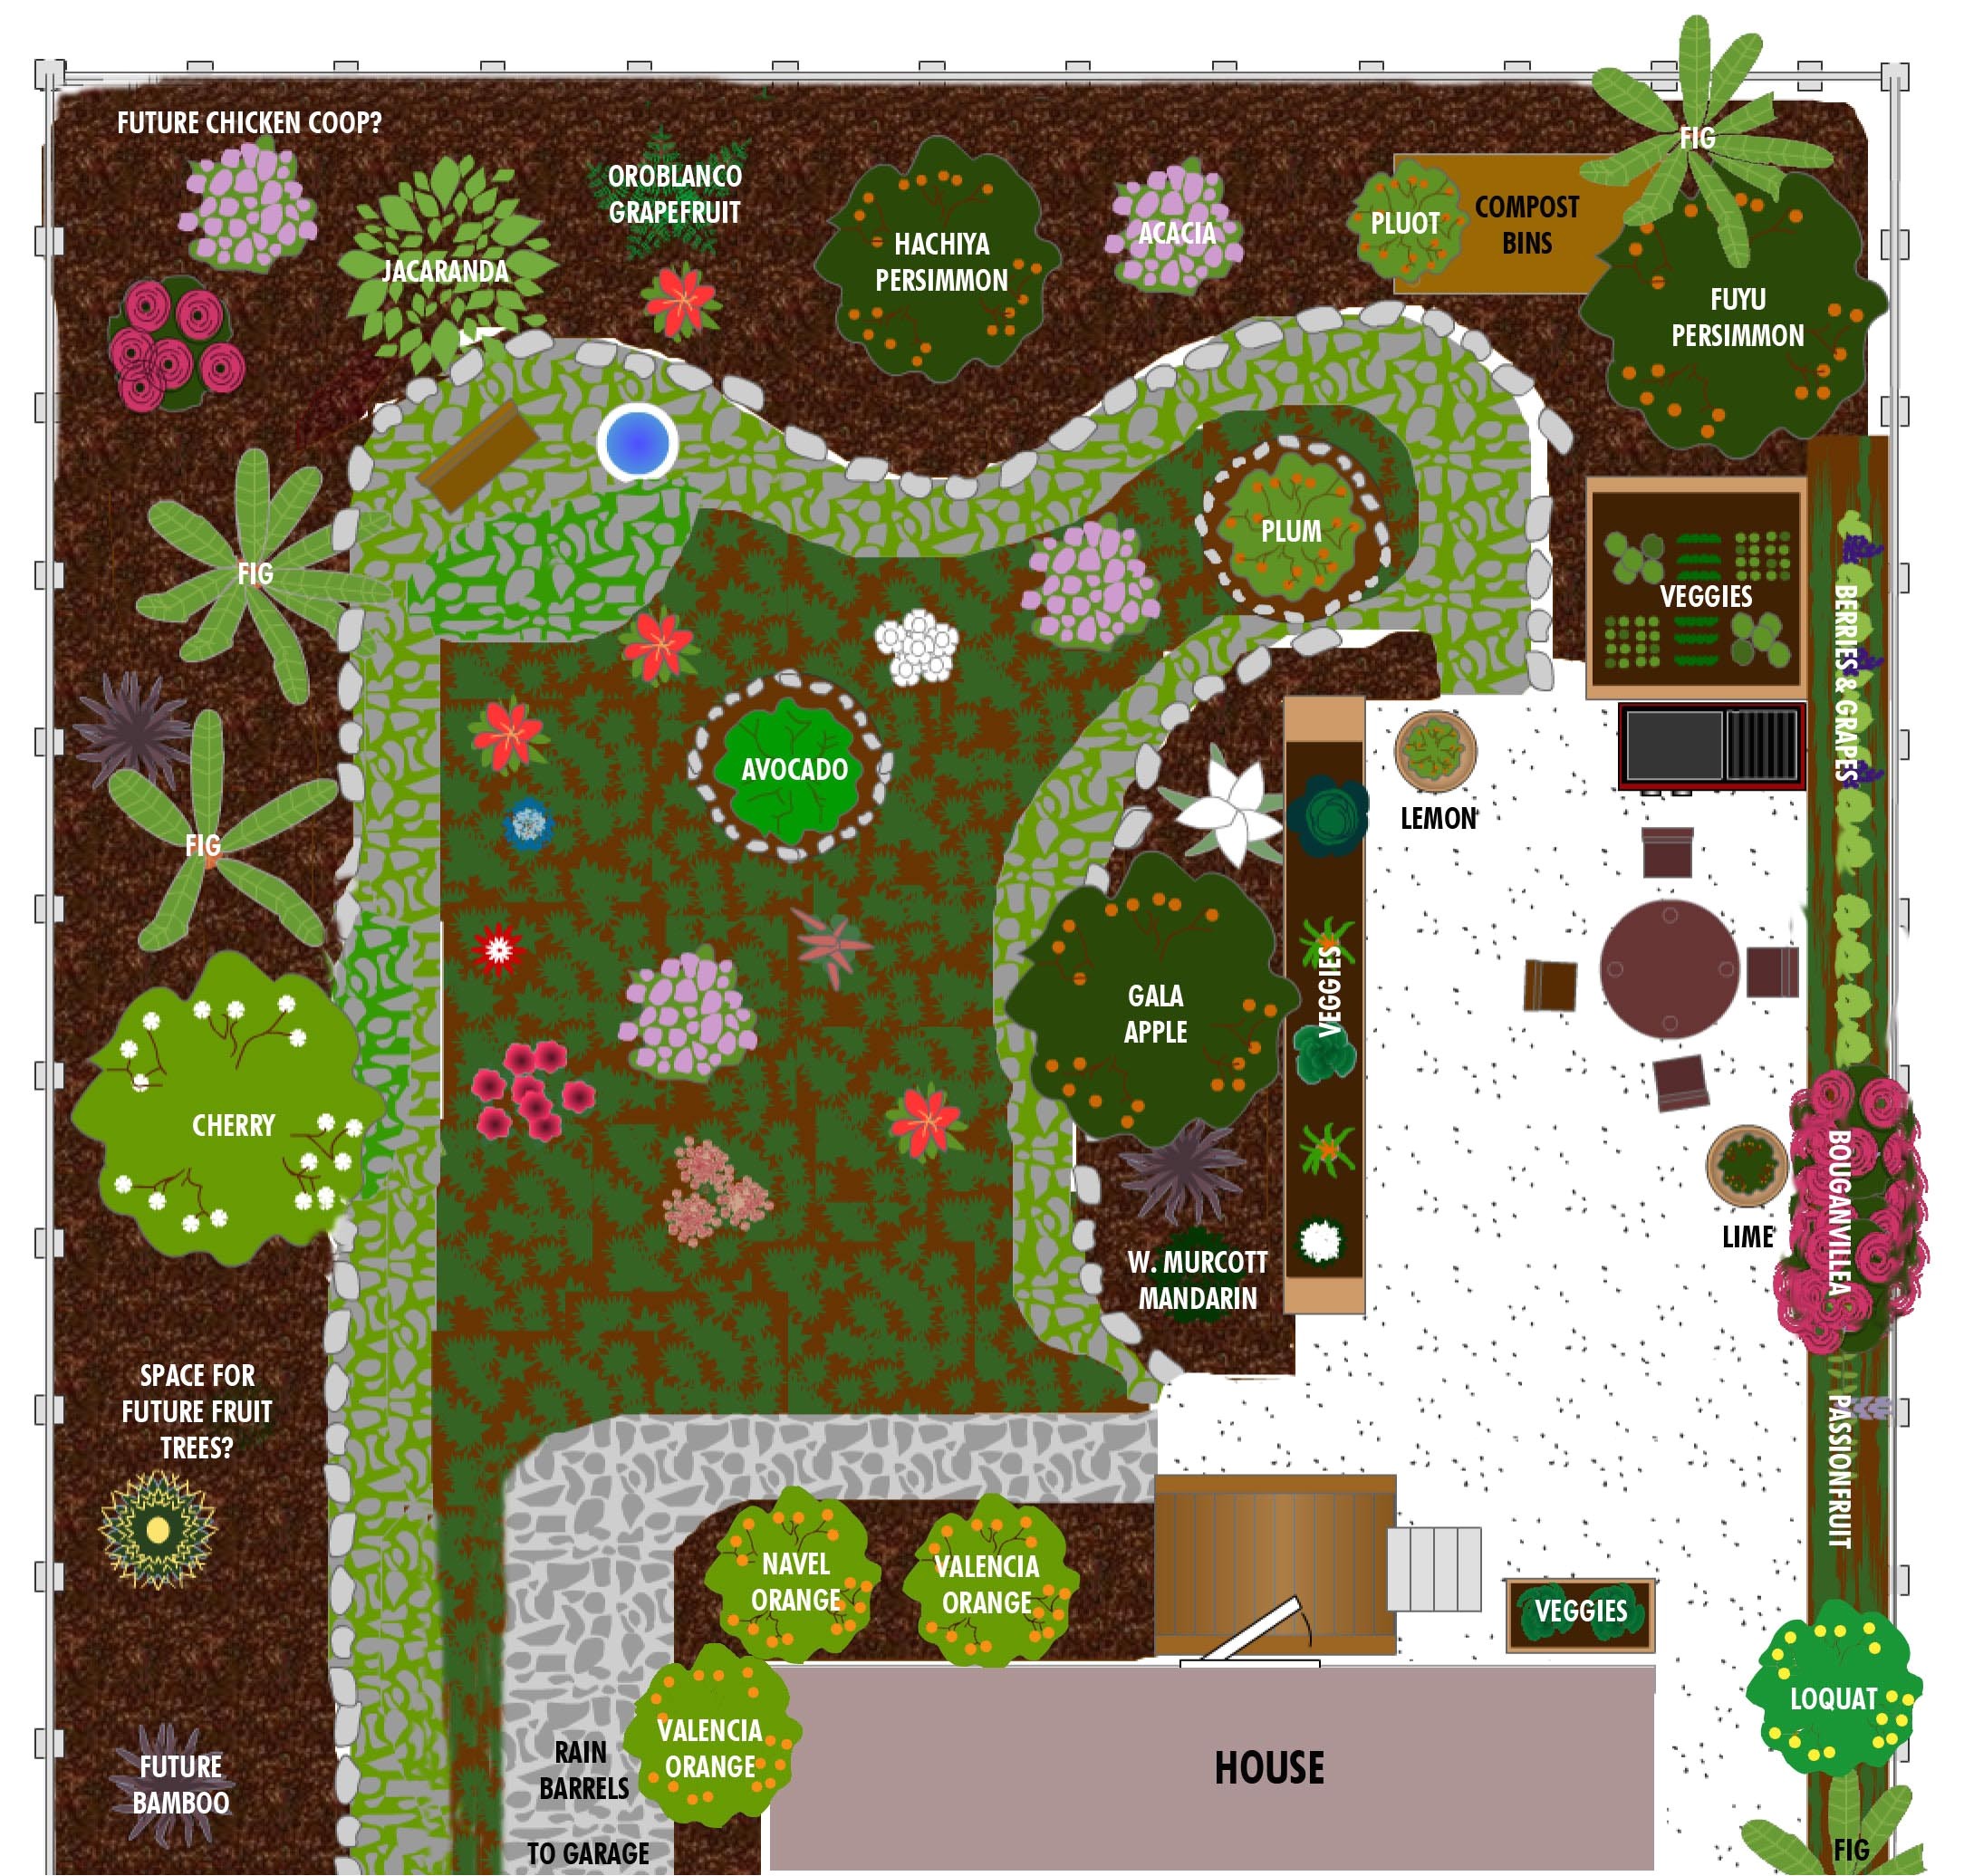 Better Homes and Gardens Plan A Garden Bhg Better Homes and Gardens Plan A Garden Landscape